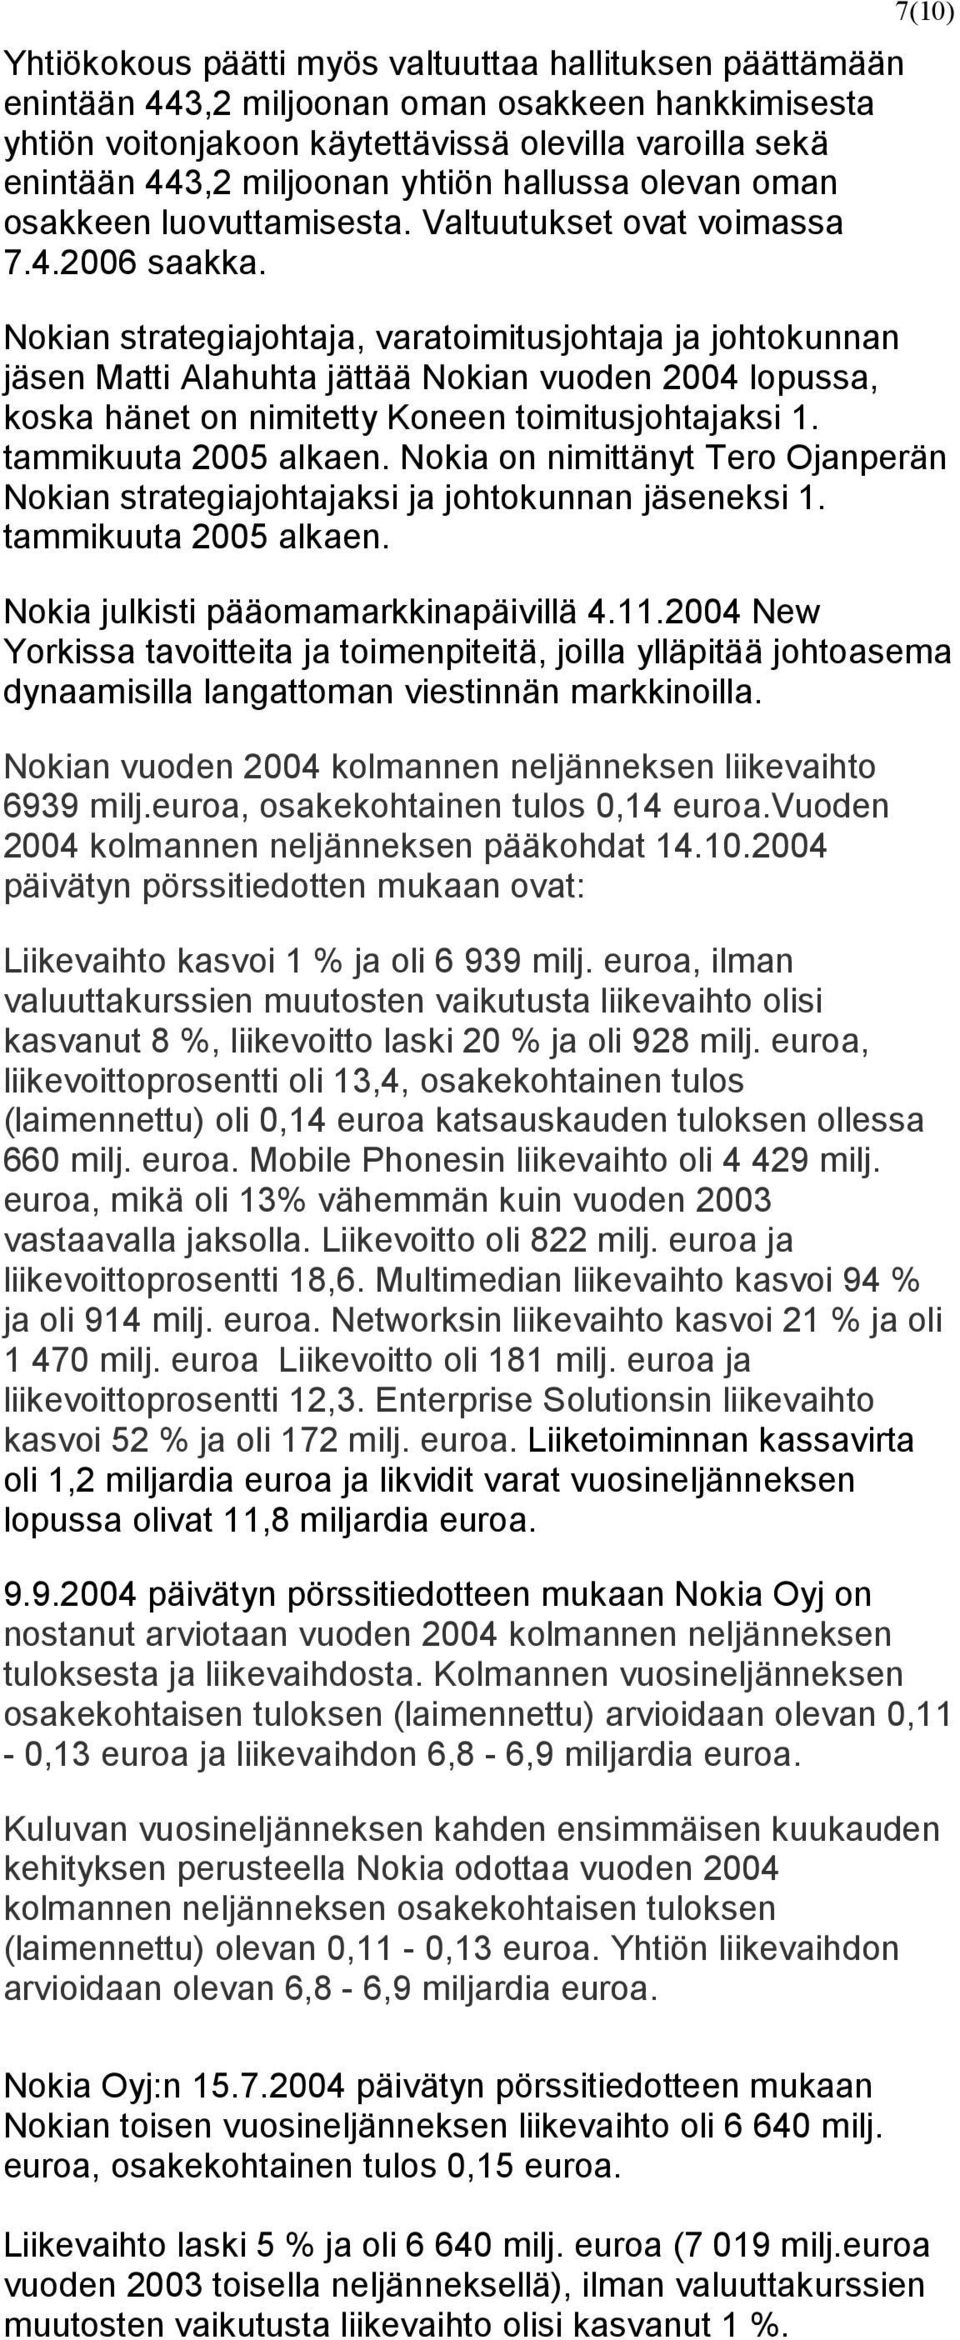 7(10) Nokian strategiajohtaja, varatoimitusjohtaja ja johtokunnan jäsen Matti Alahuhta jättää Nokian vuoden 2004 lopussa, koska hänet on nimitetty Koneen toimitusjohtajaksi 1. tammikuuta 2005 alkaen.